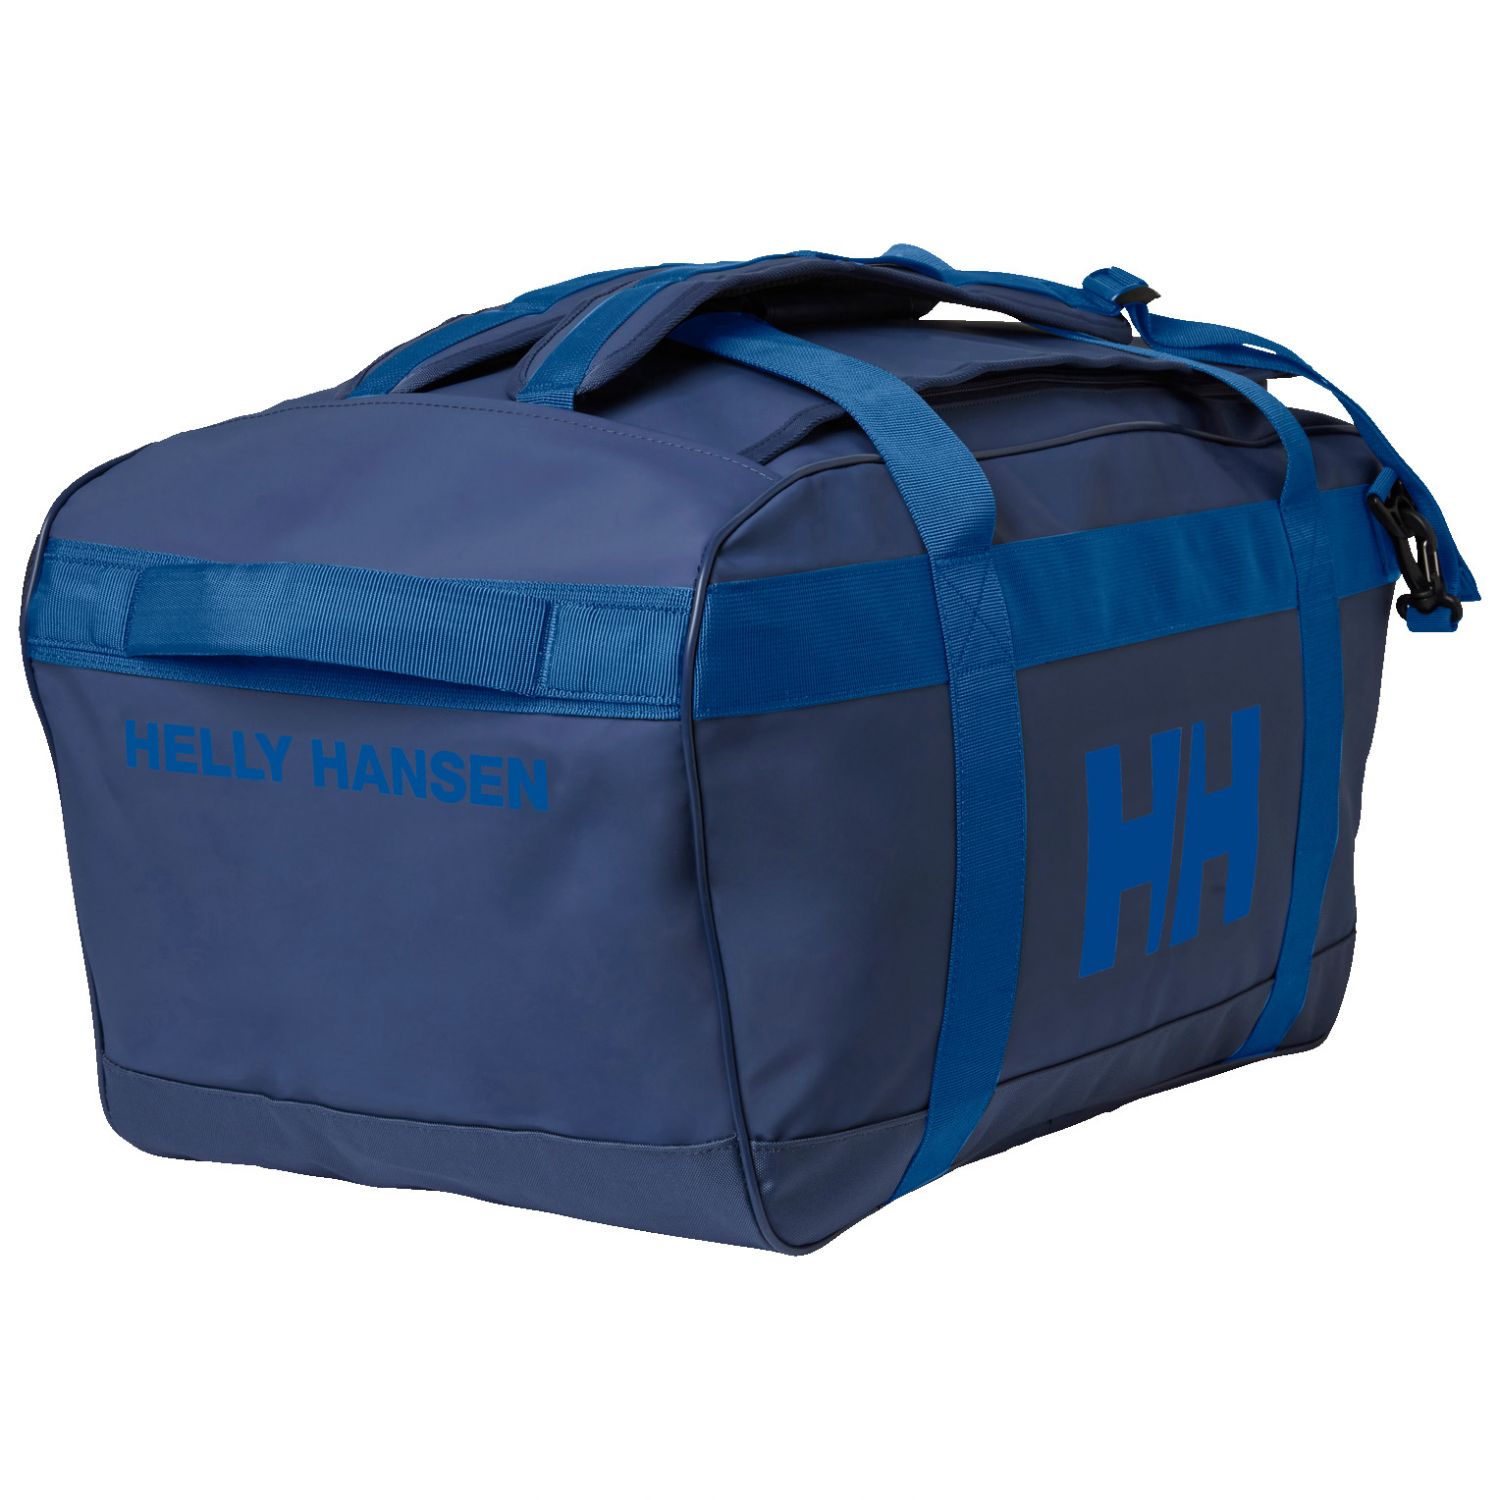 Brug Helly Hansen Scout Duffel Bag, 90L, ocean til en forbedret oplevelse